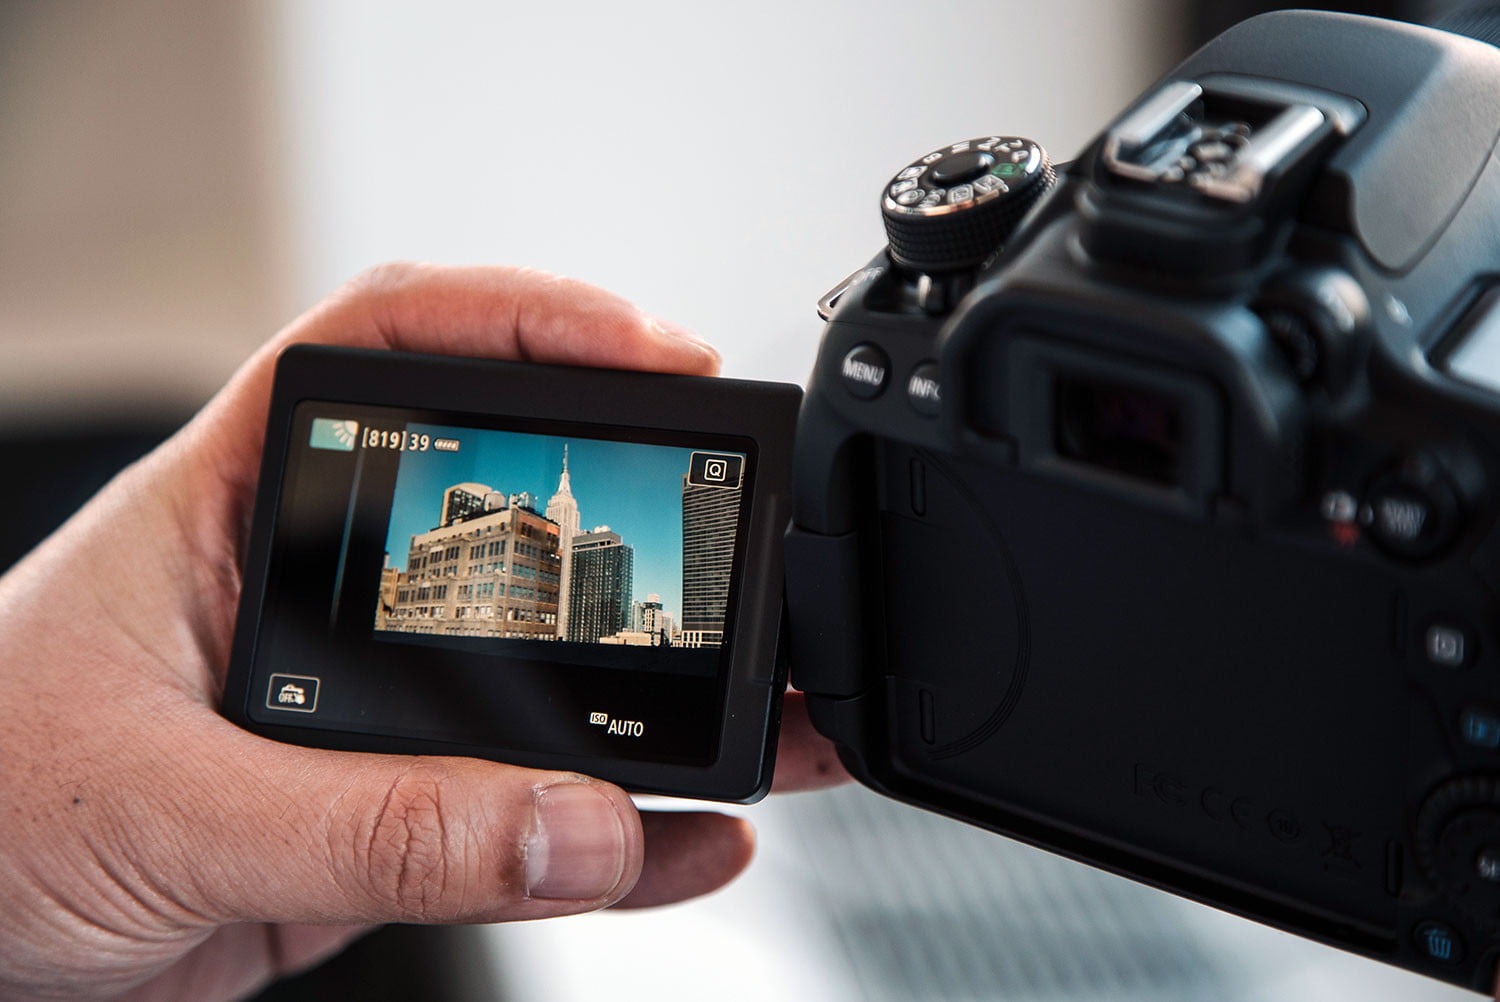 Las mejores cámaras DSLR profesionales y aficionados | Digital Trends Español